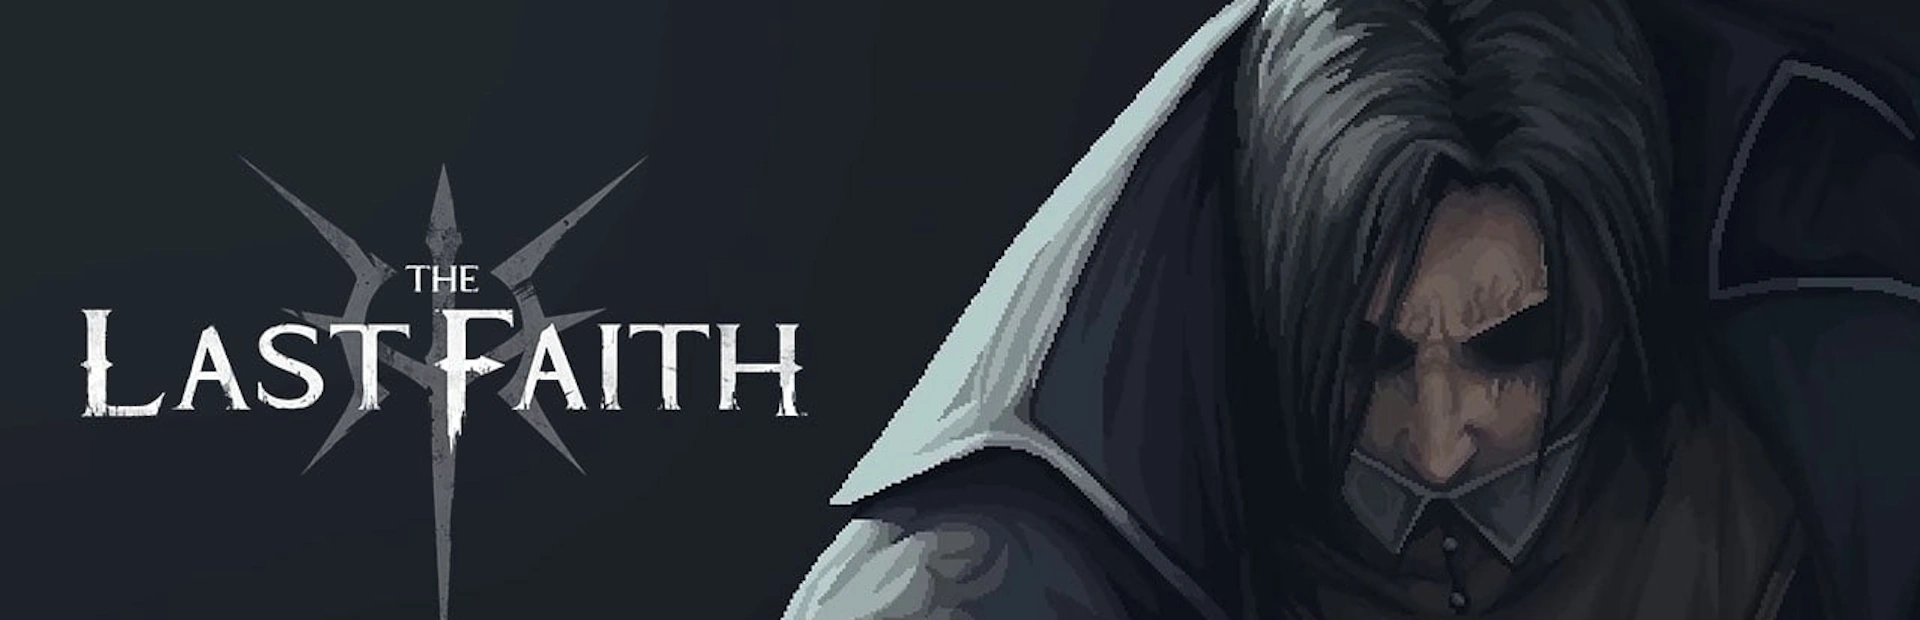 دانلود بازی The Last Faith برای کامپیوتر | گیمباتو